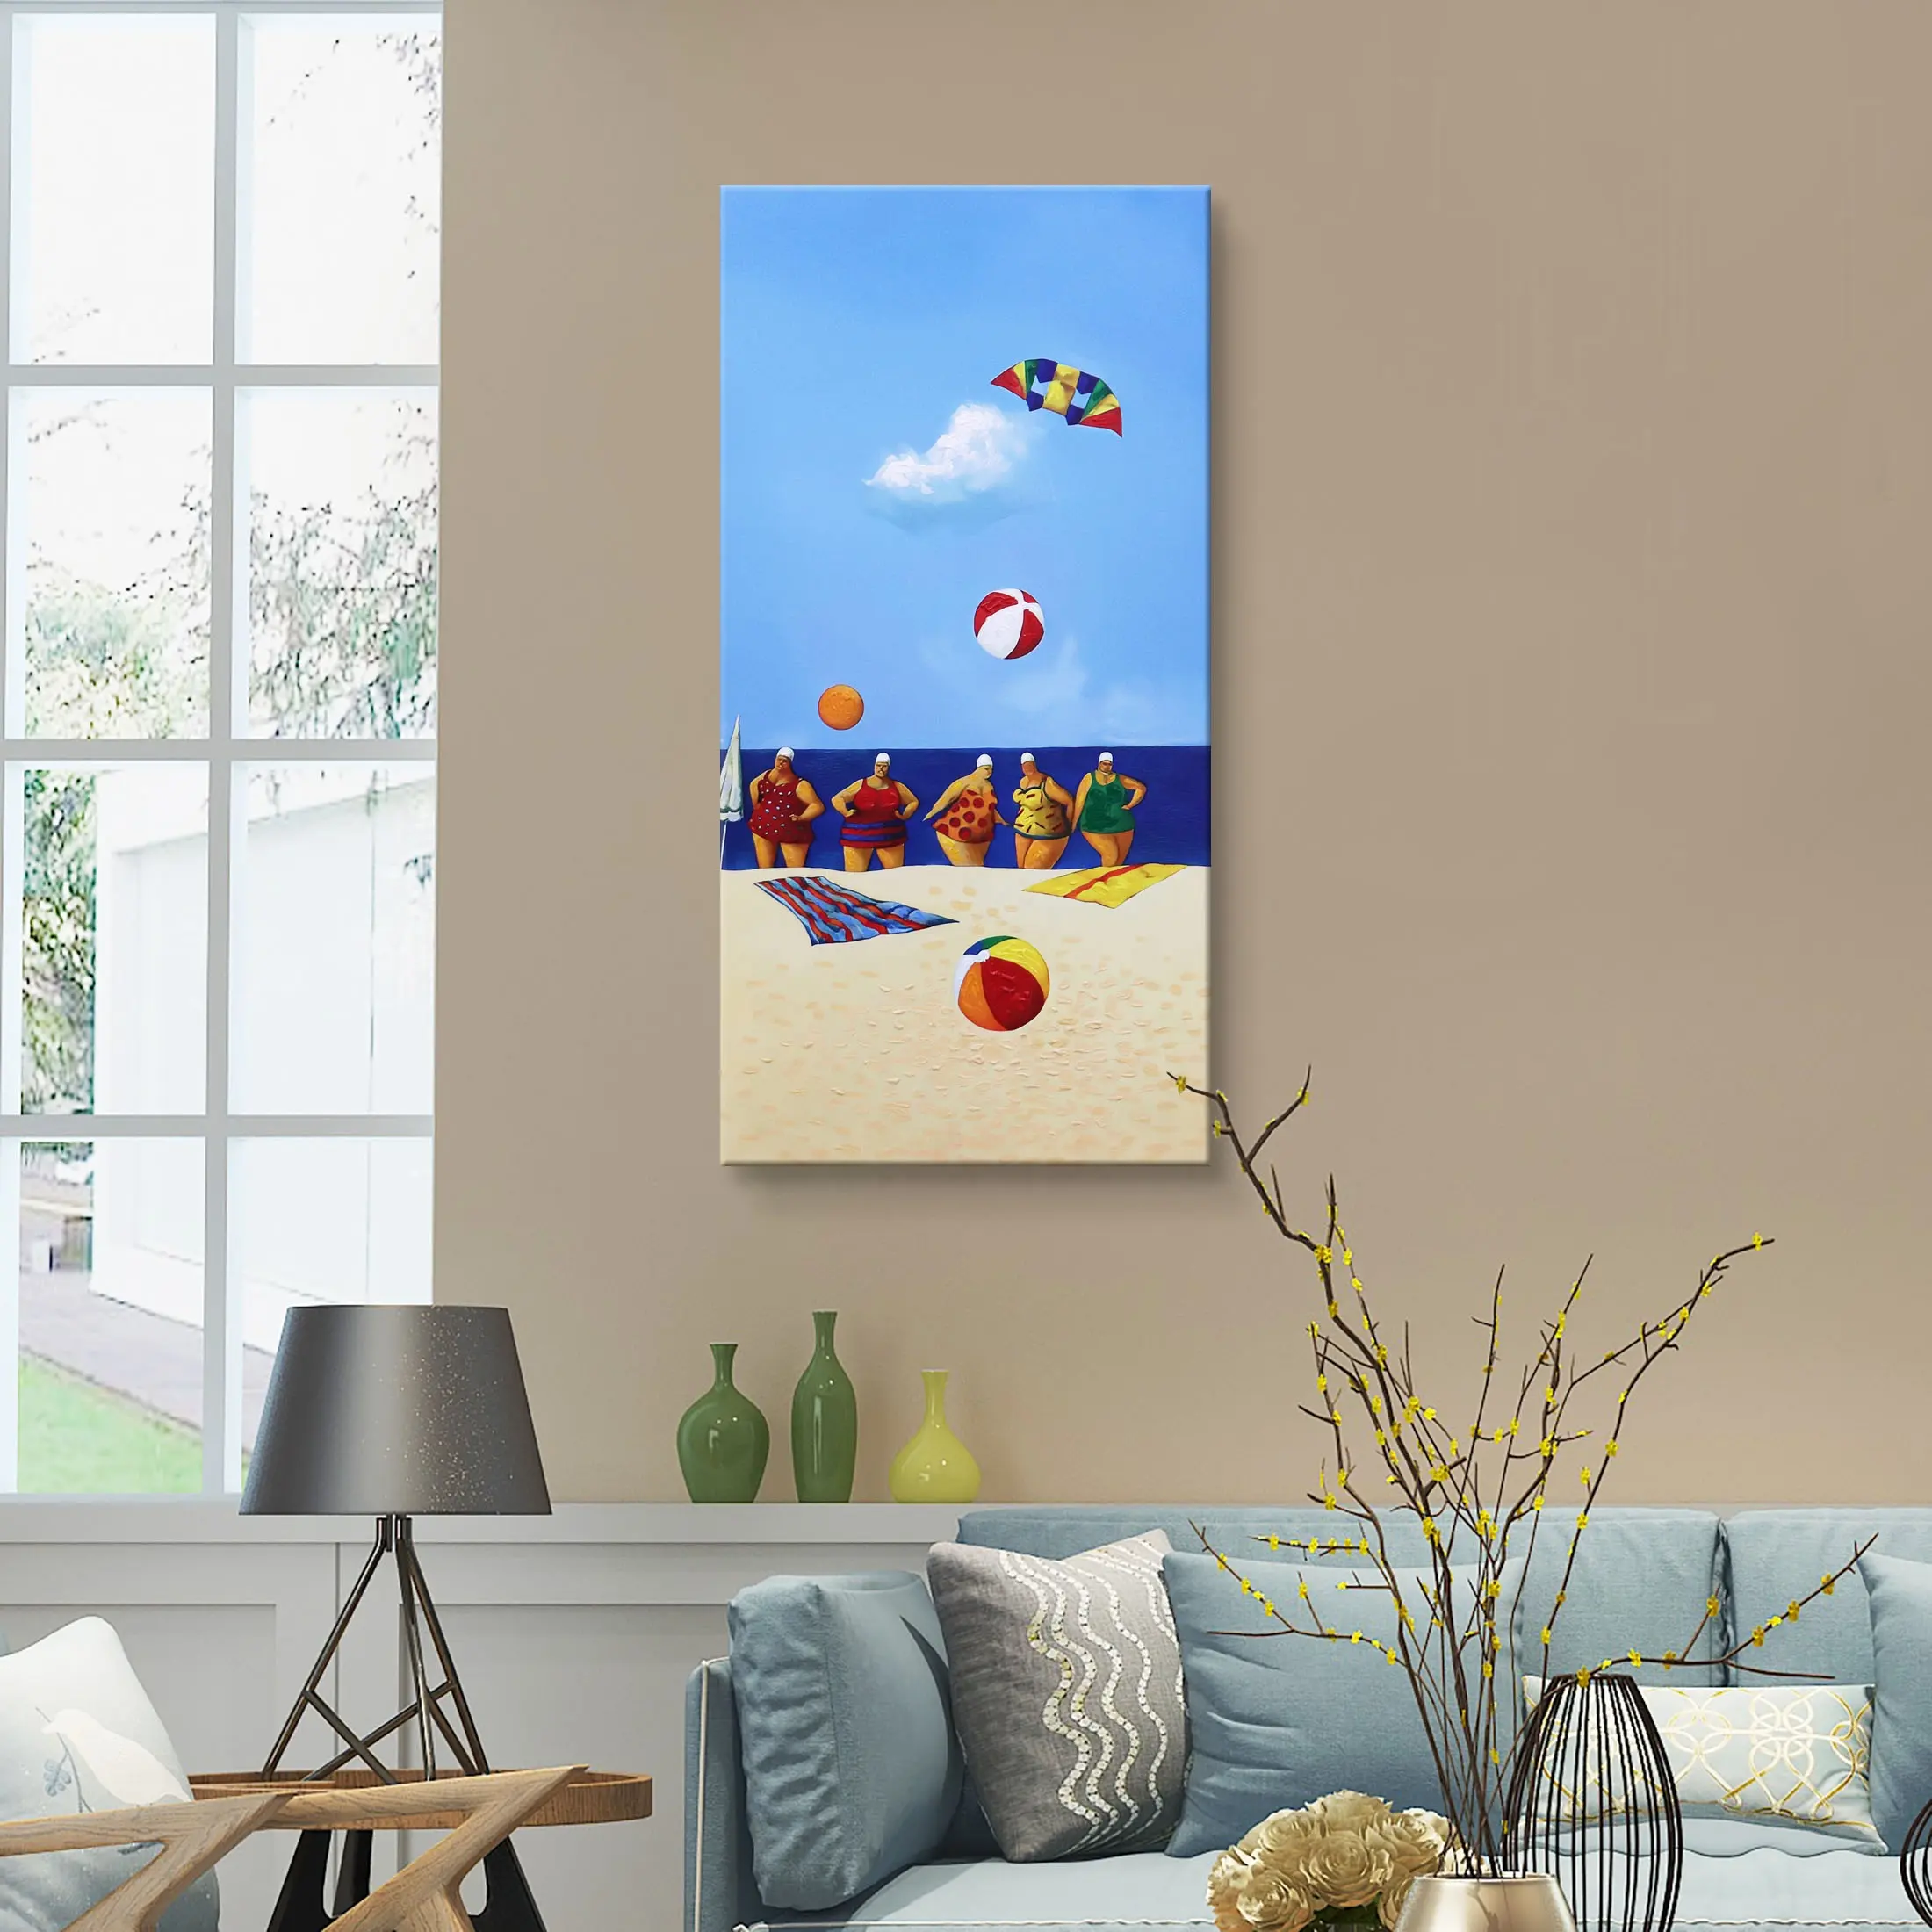 لوحة فنية مطبوعة من قماش مخملي 30% رسومات يدوية لوحة فنية للشاطئ والحائط من الأكريليك رسومات فنية مرسومة باليد على قماش فن تجريدي